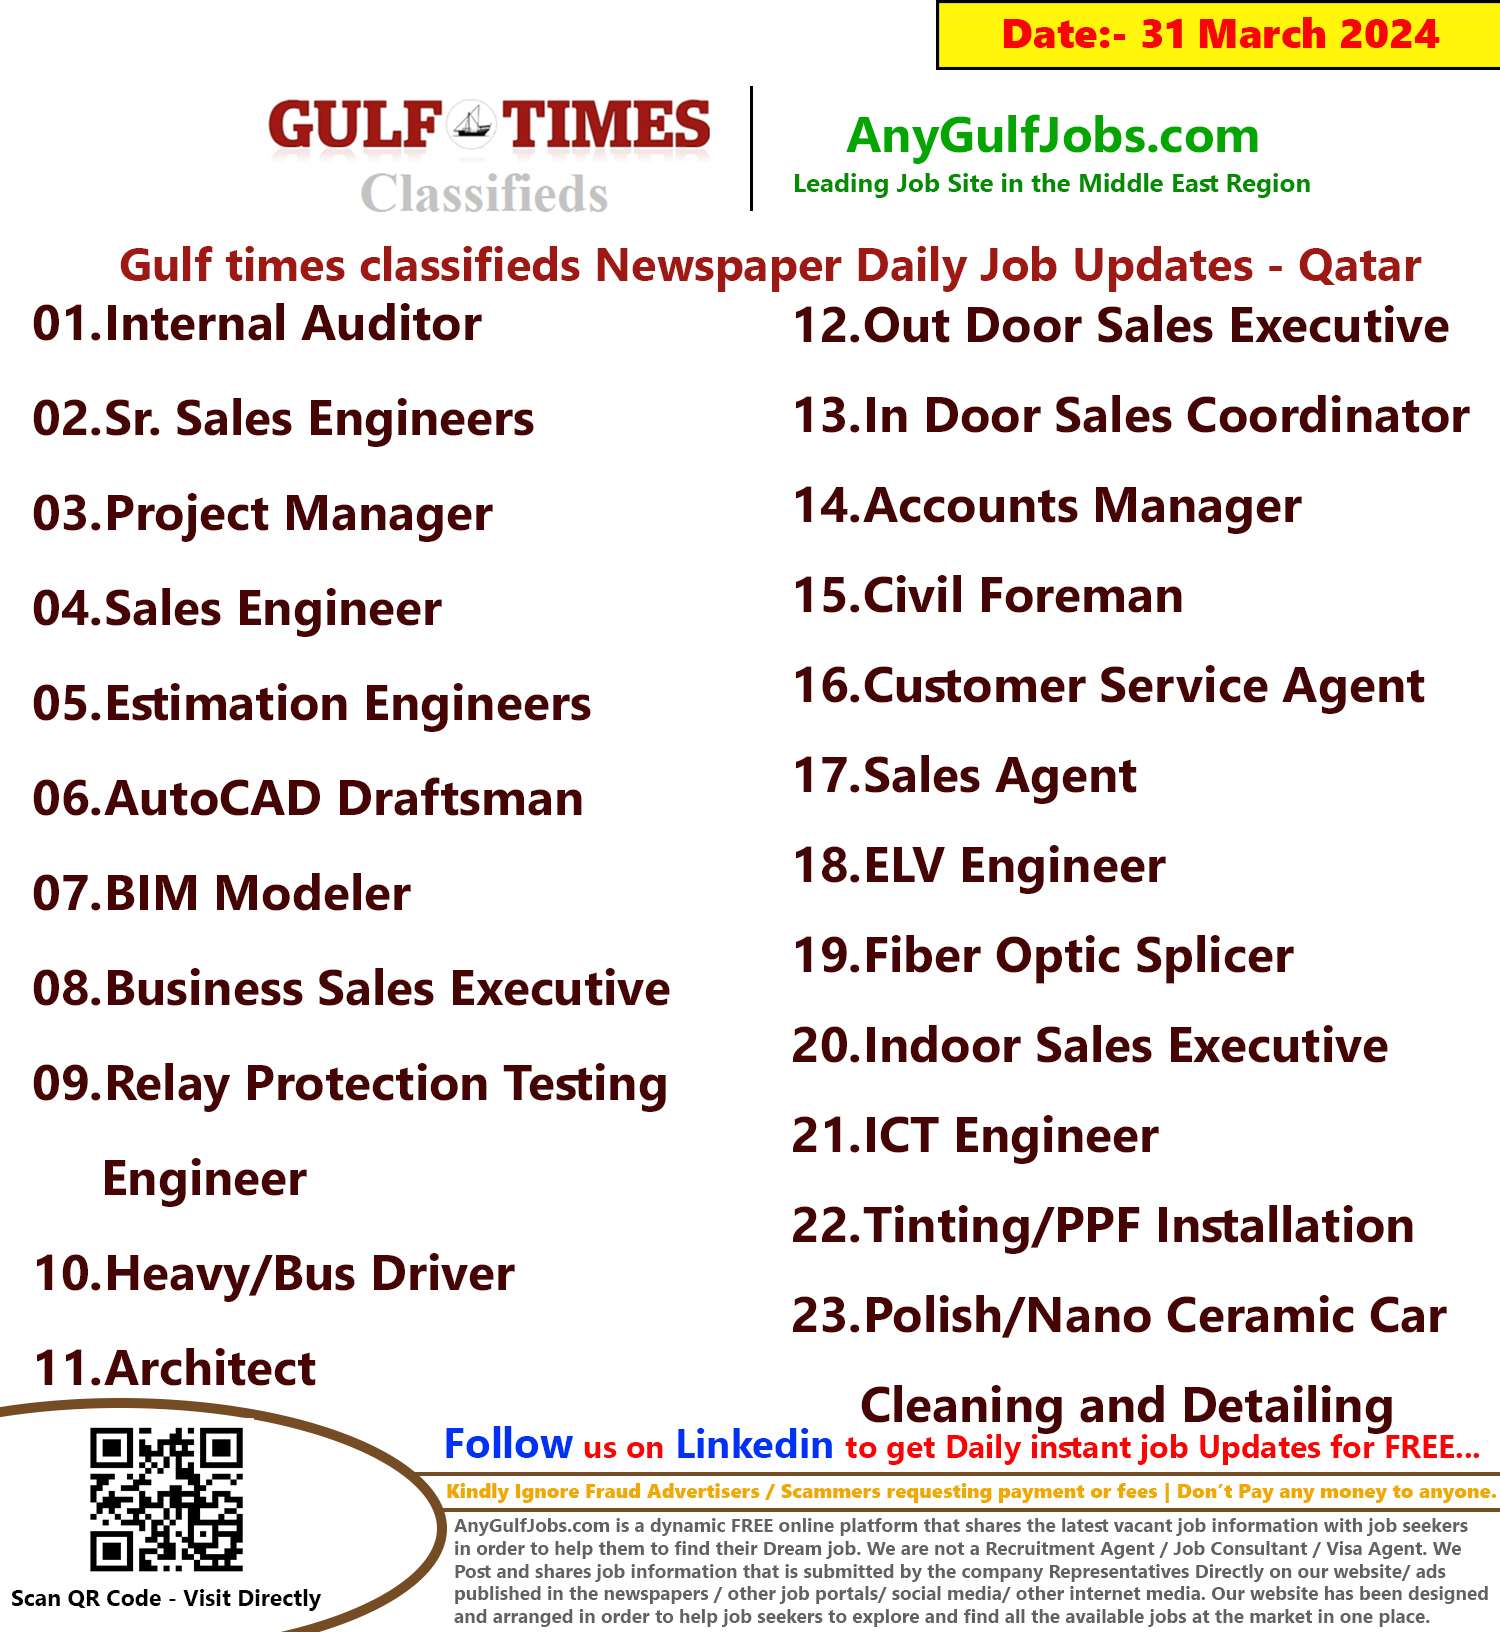 Gulf Times Classifieds Job Vacancies Qatar - 31 March 2024